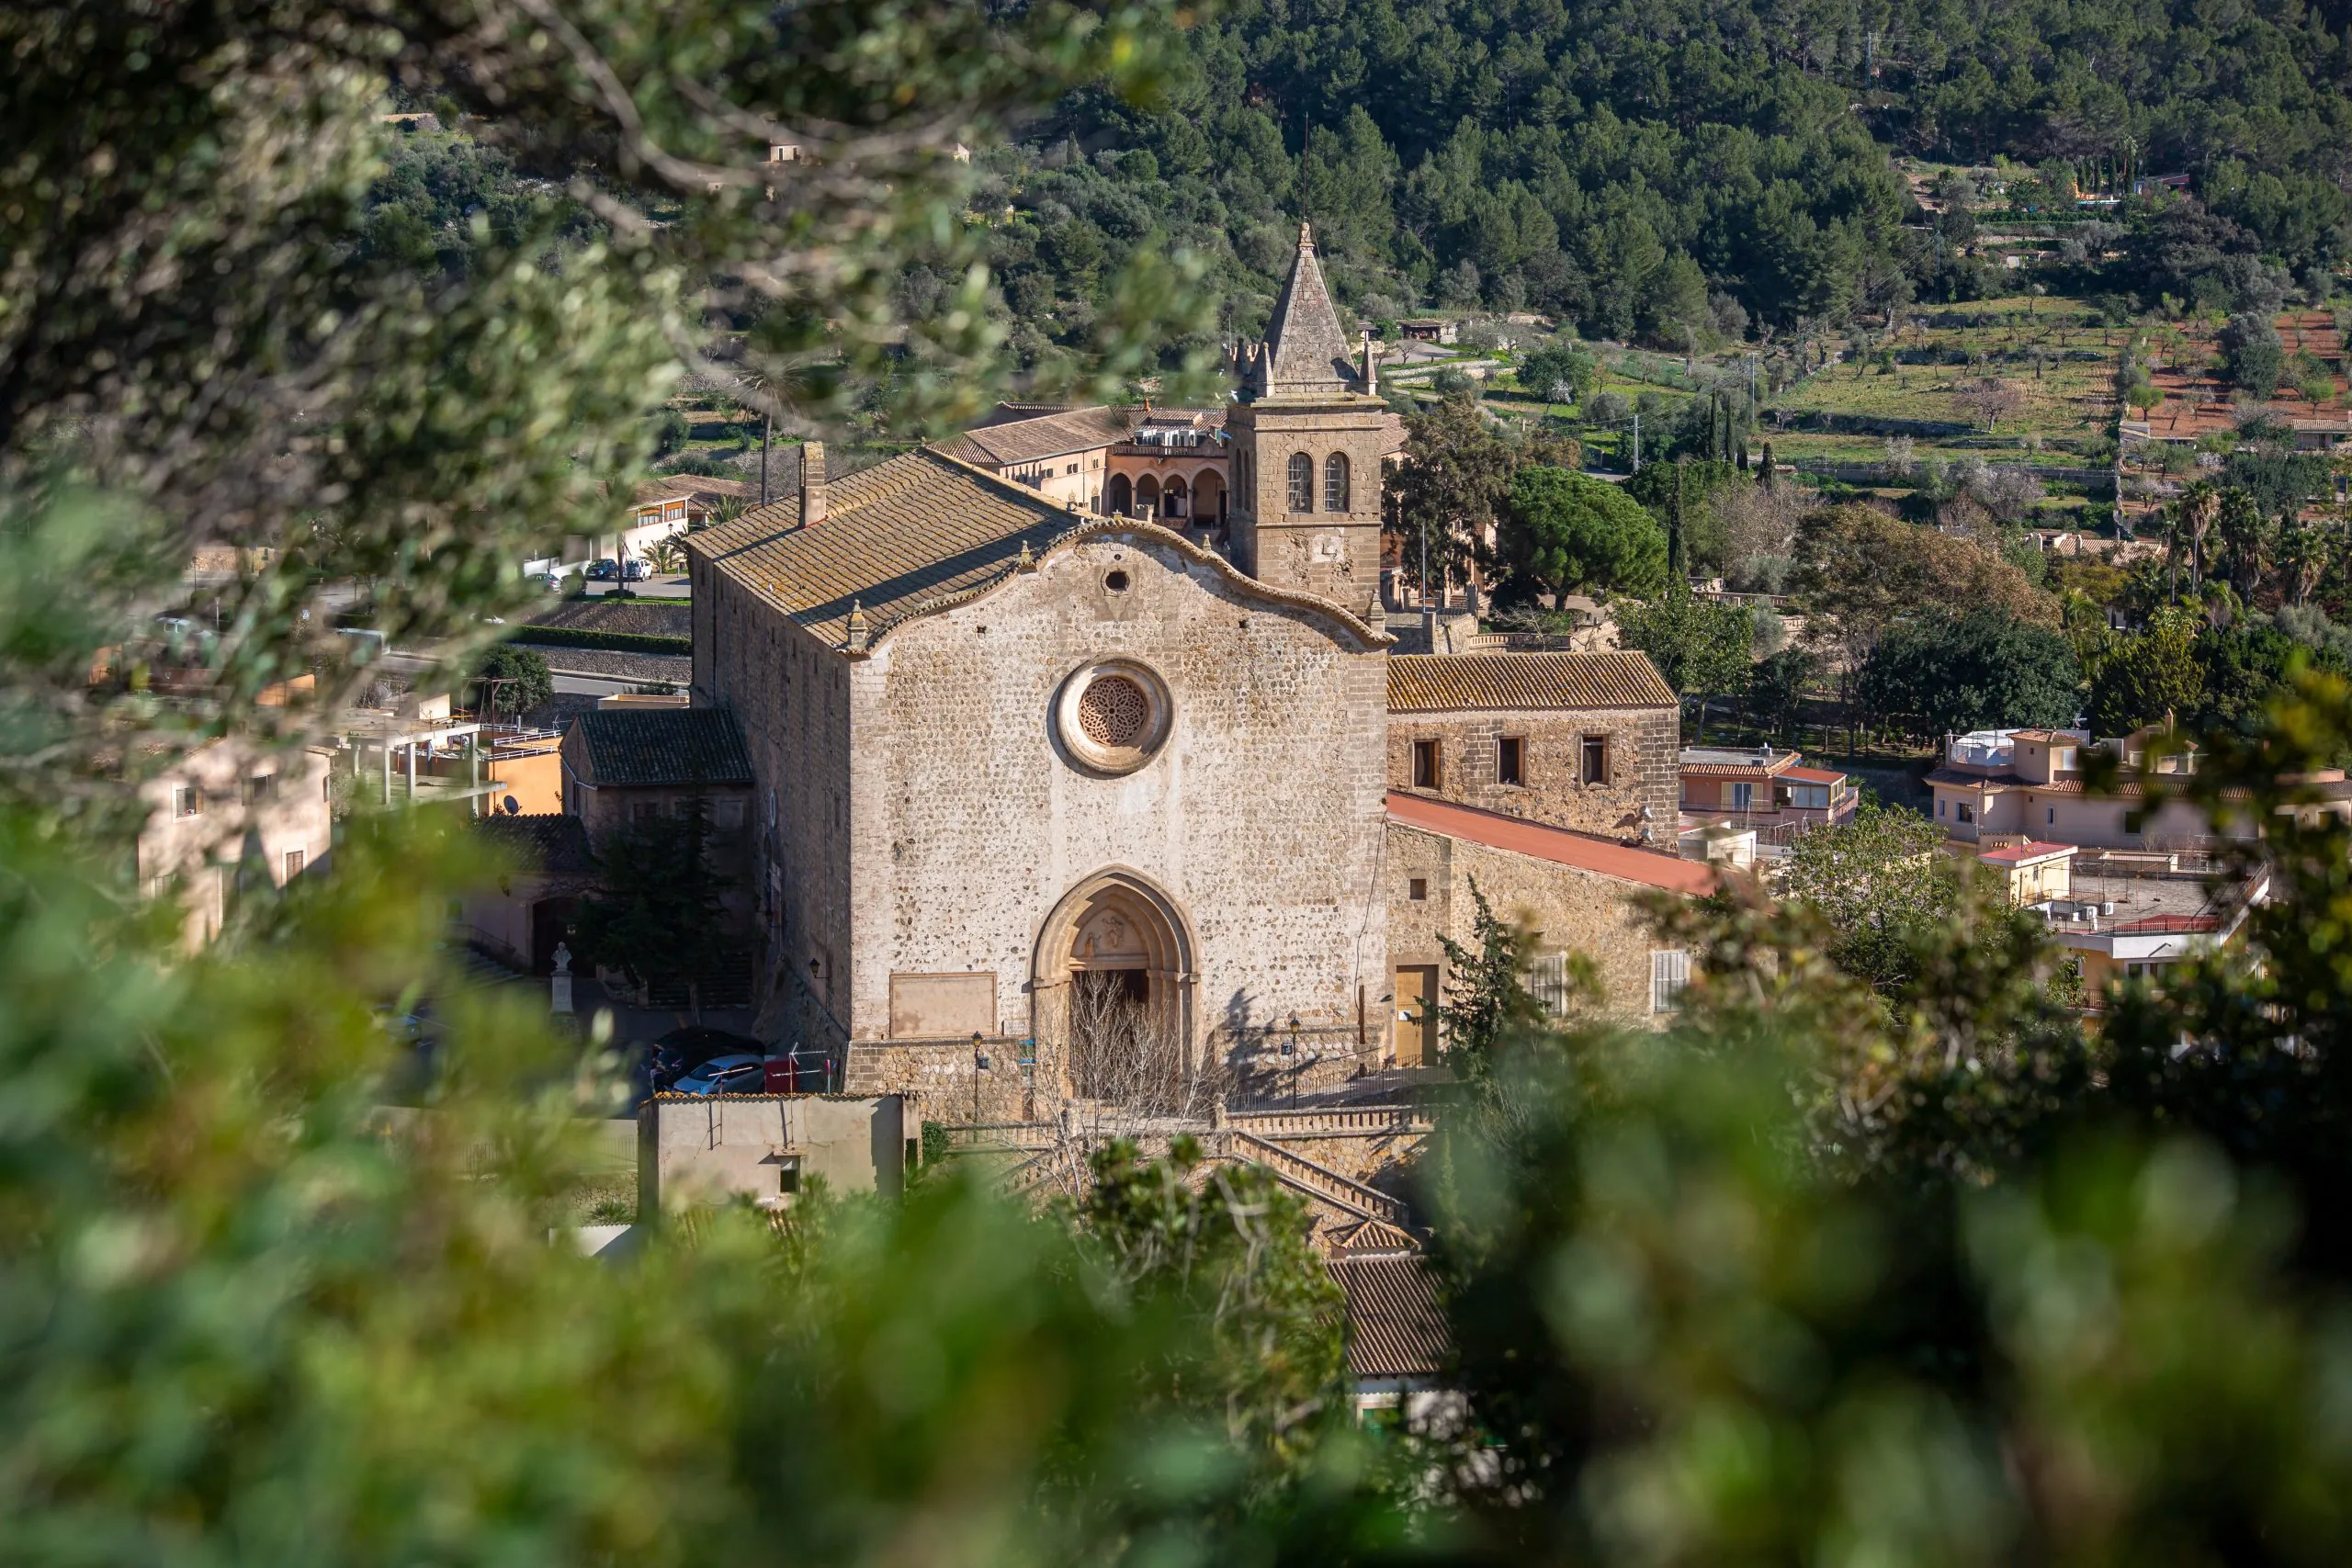 parish church Santa Maria d'Andratx in town Andratx, Mallorca, Majorca, Balearic Islands, Spain, Europe